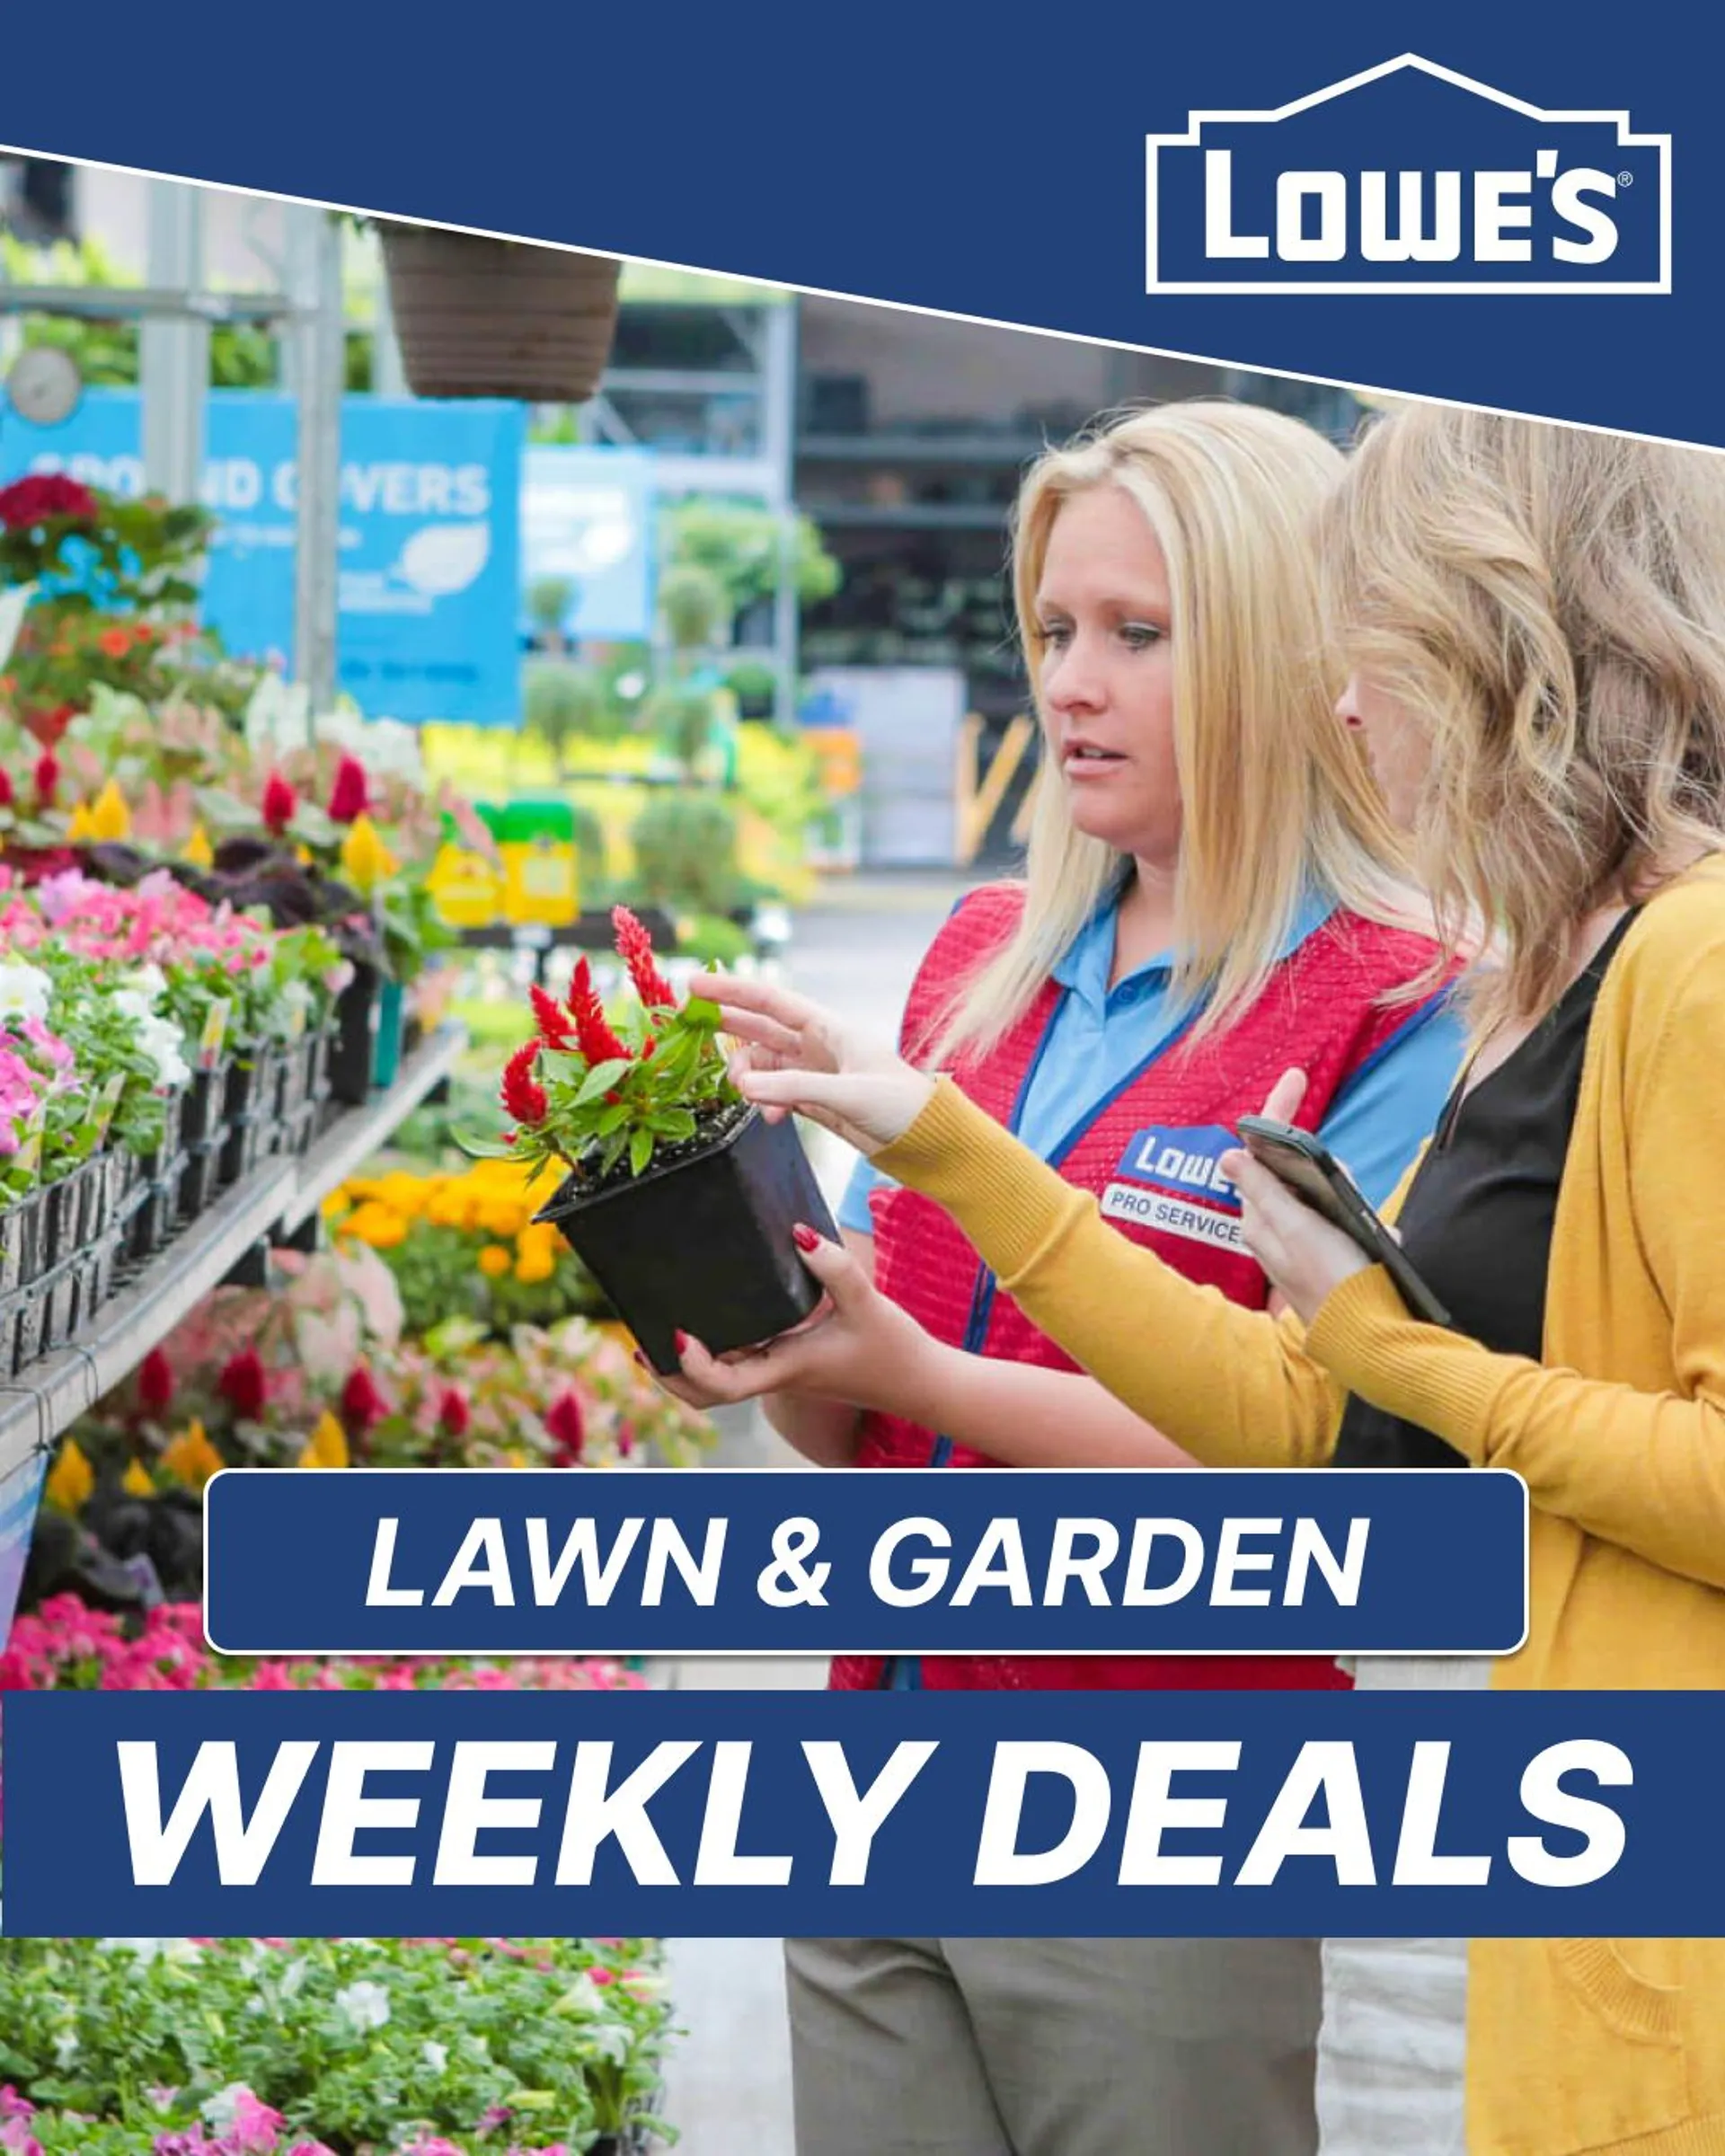 Lowe's - Lawn & garden deals 